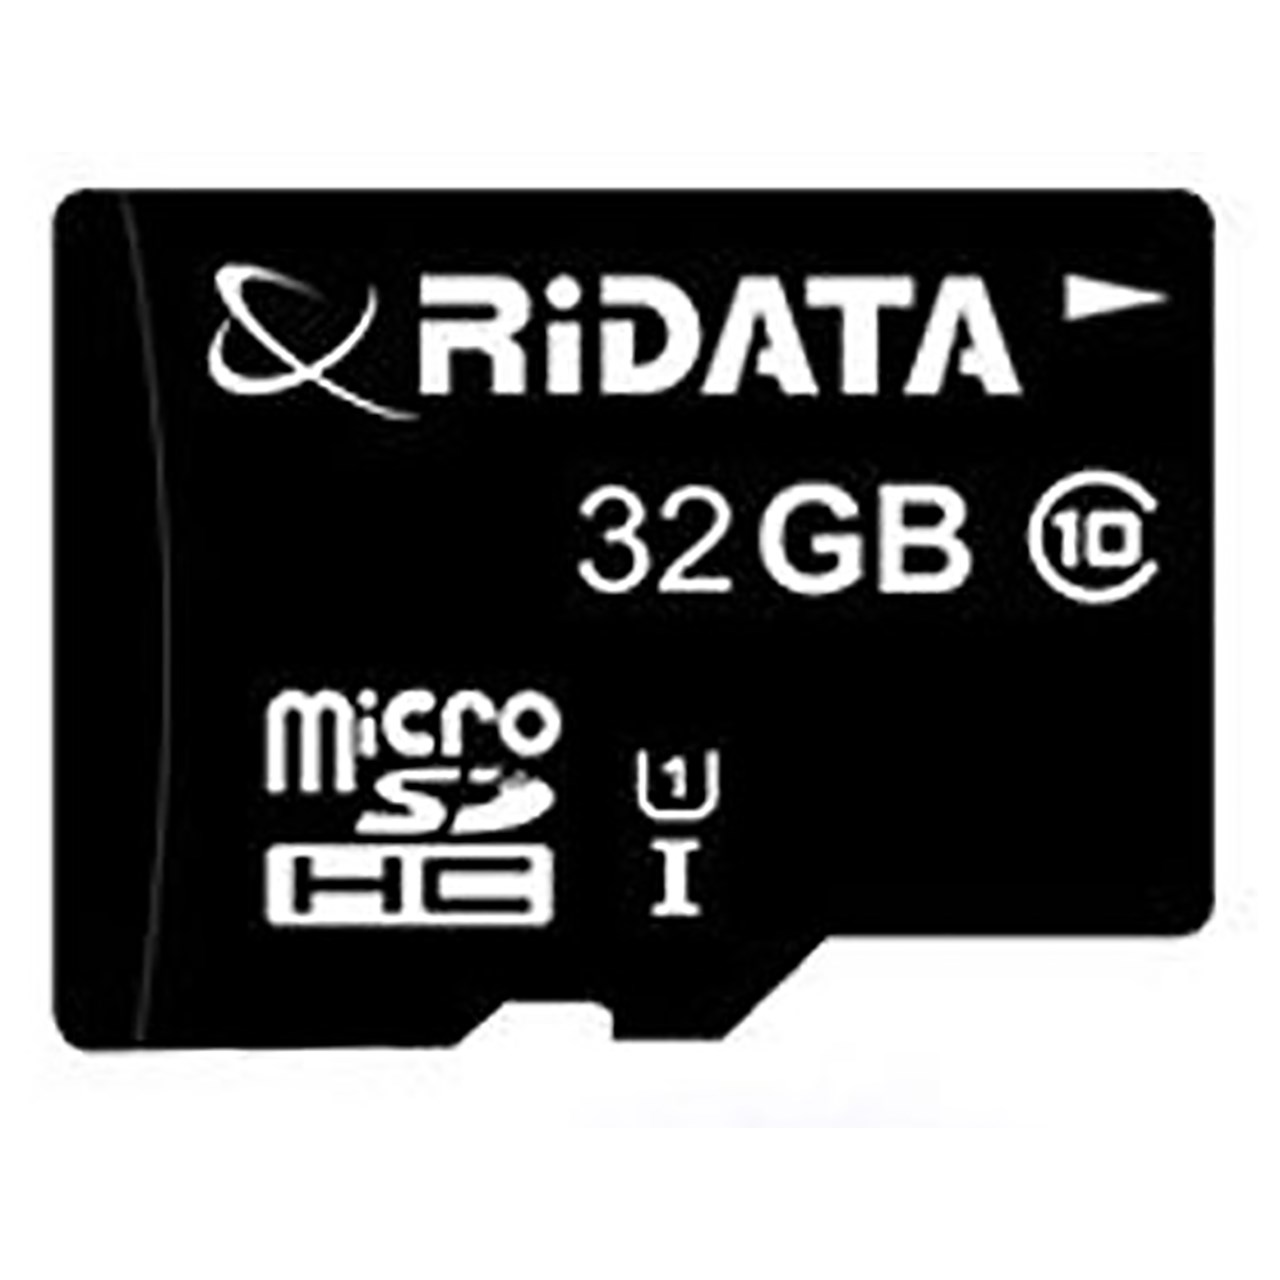 کارت حافظه MicroSDHC ری دیتا کلاس 10 استاندارد UHS-I U1 سرعت 50MBps ظرفیت 32 گیگابایت